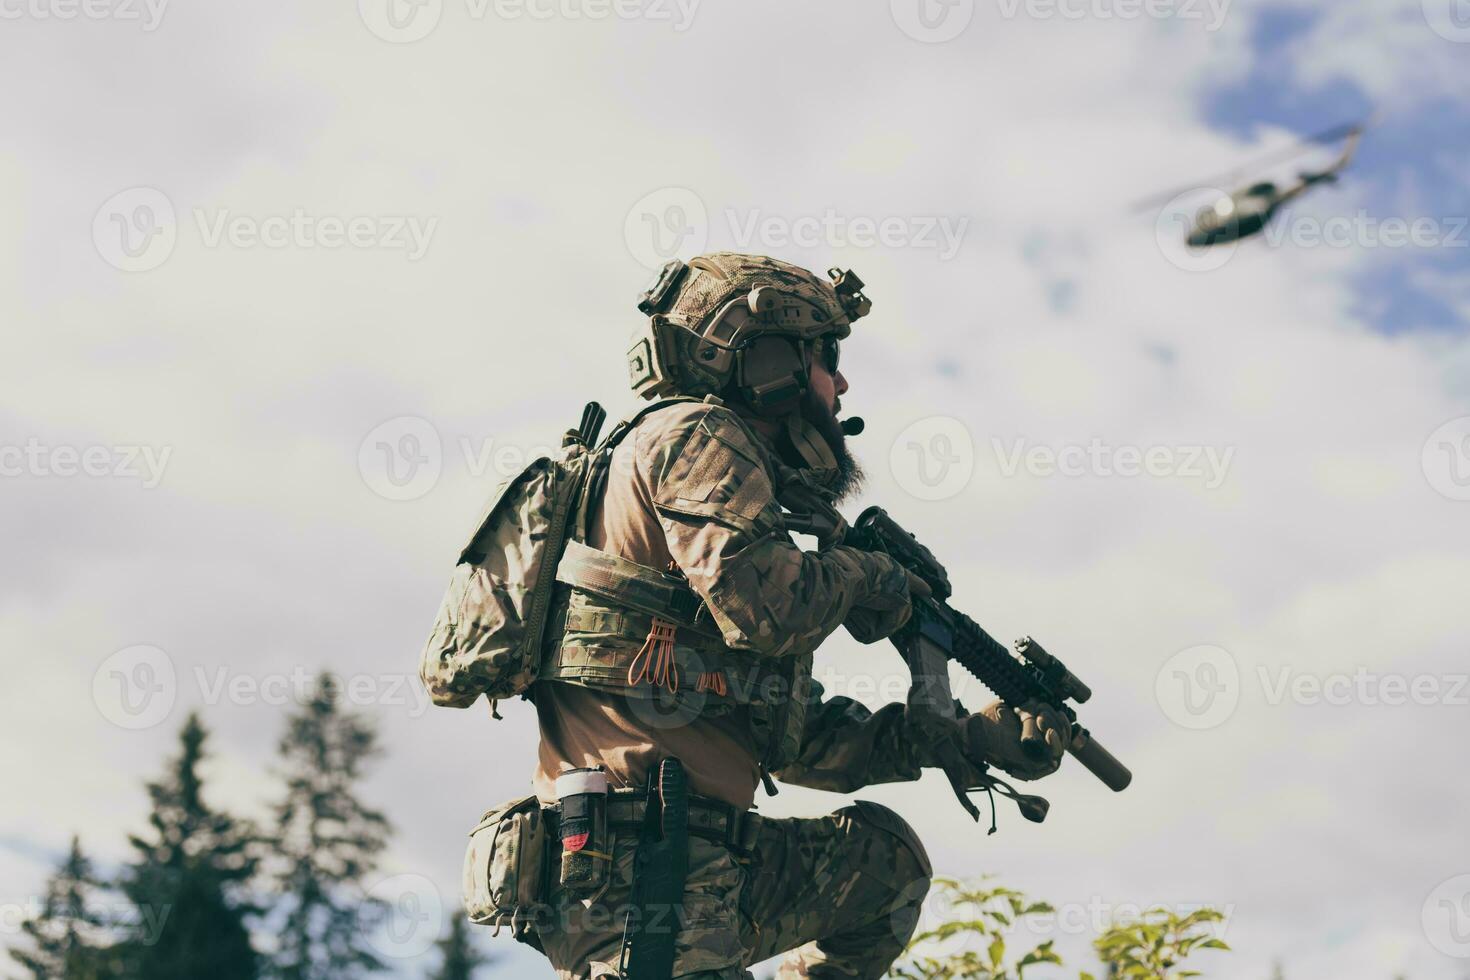 krig begrepp. en skäggig soldat i en särskild krafter enhetlig stridande ett fiende i en skog område. selektiv fokus foto